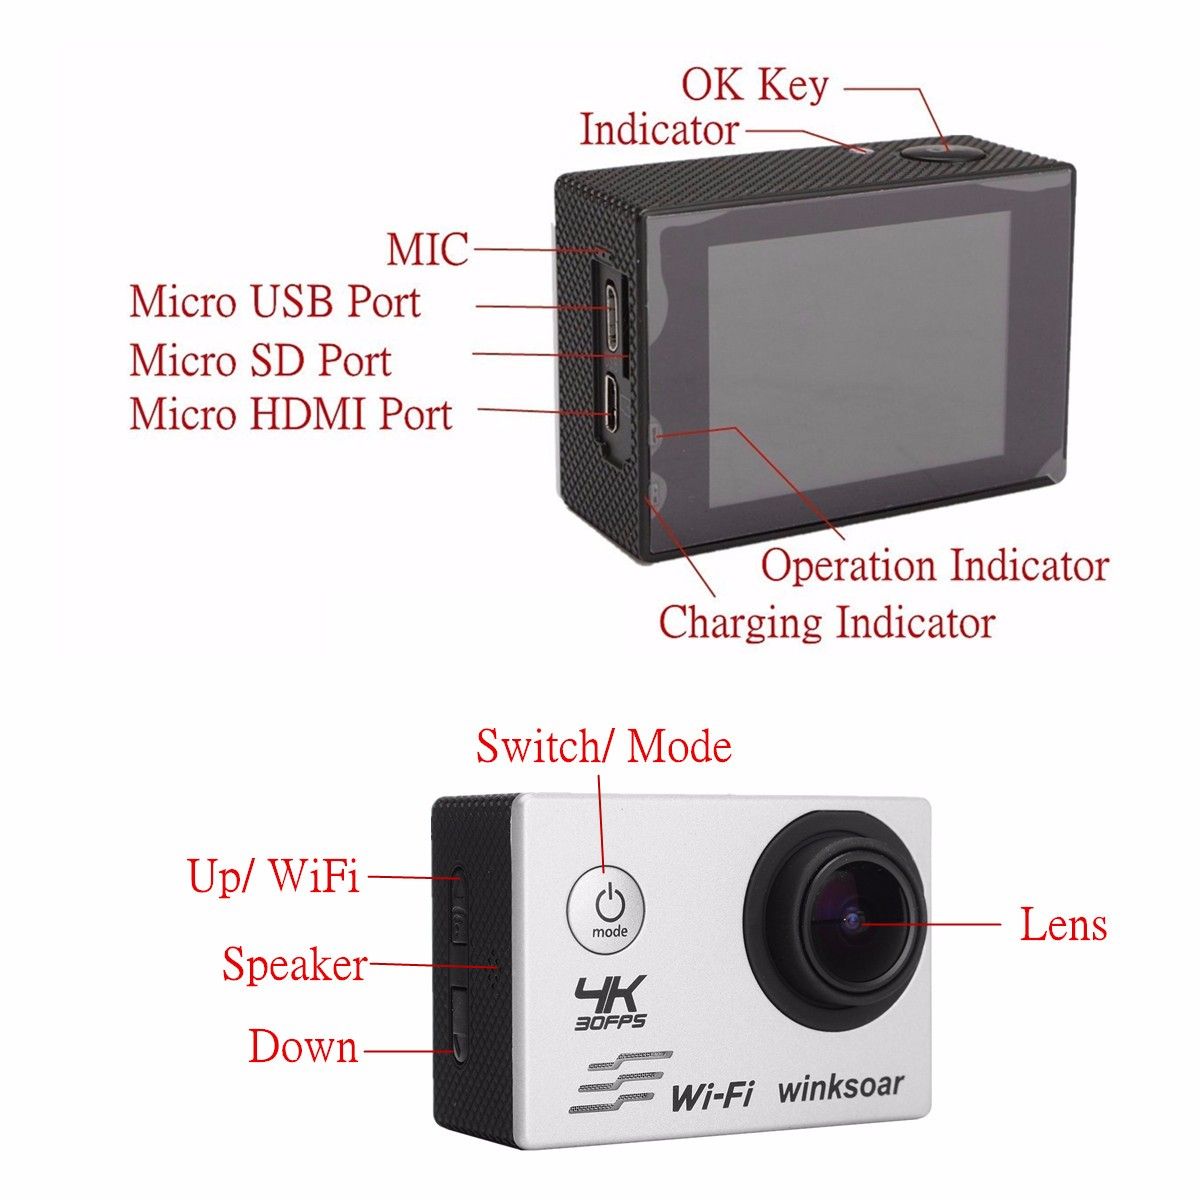 Waterproof-SJ8000-Ultra-4K-HD-1080P-WiFi-20Inch-LCD-Sport-Camera-Action-DV-1266124